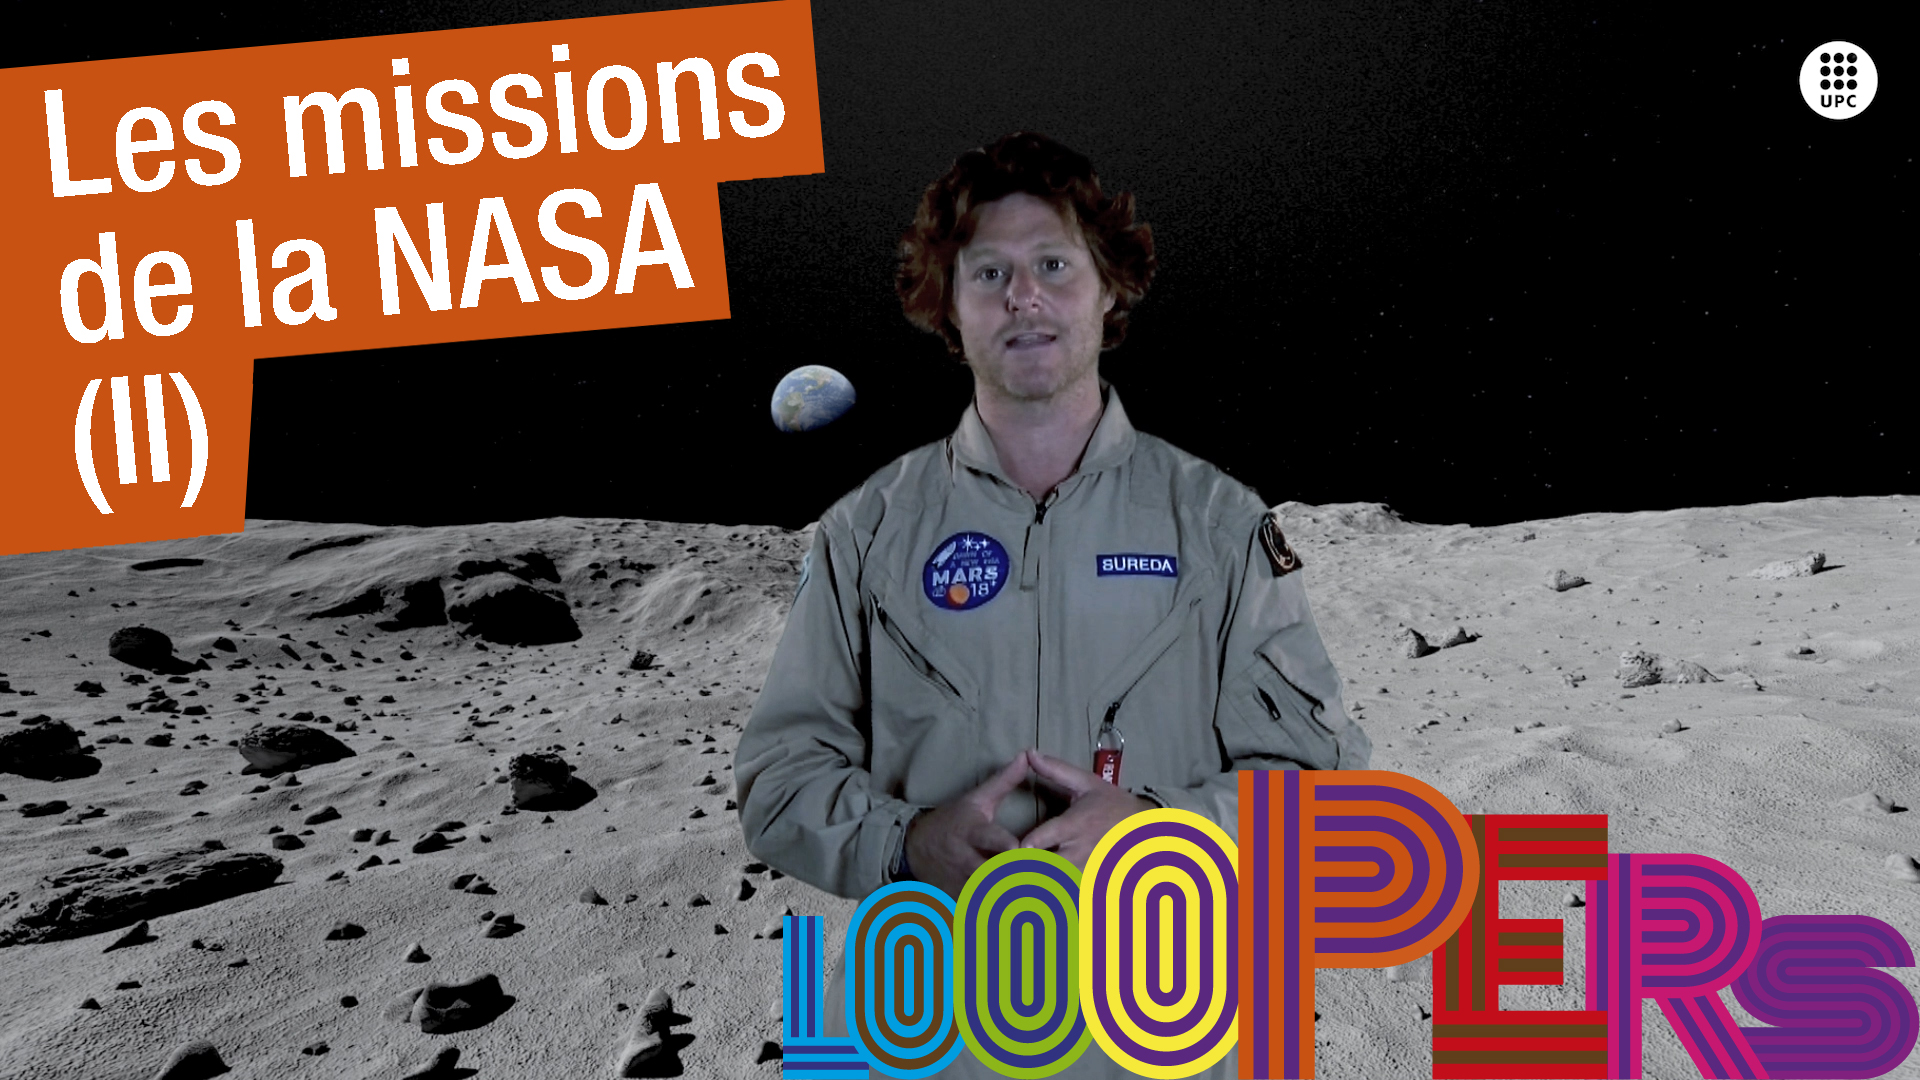 Les missions de la NASA (II)